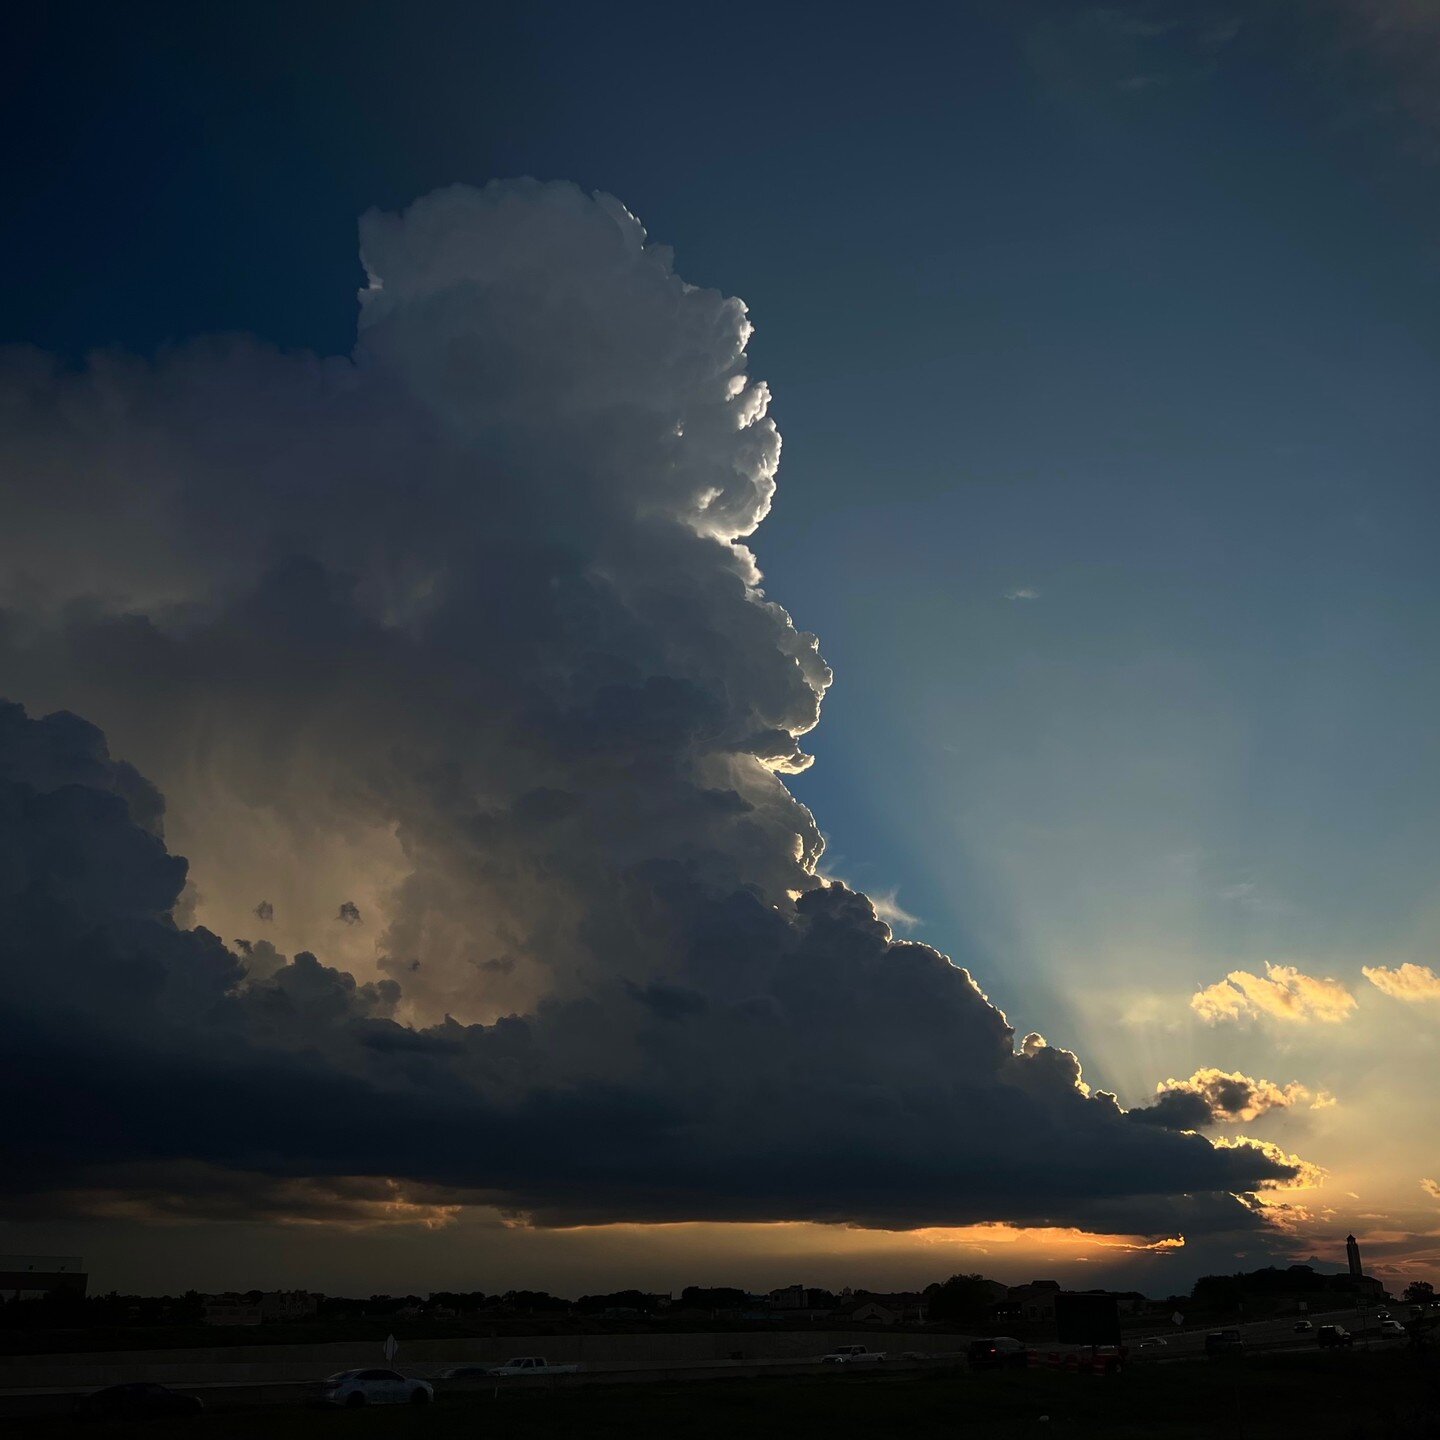 Drama in the skies.
⛅️
#cloudporn #Texas #sky #cumulus #thunderstorm #sunset #weather #meteorology #shotoniphone #iphonography #iwishihadmybigcamera #bestcameraistheonethatyouleftathomebutnevermindiguessaniphonewilldothejobfornow